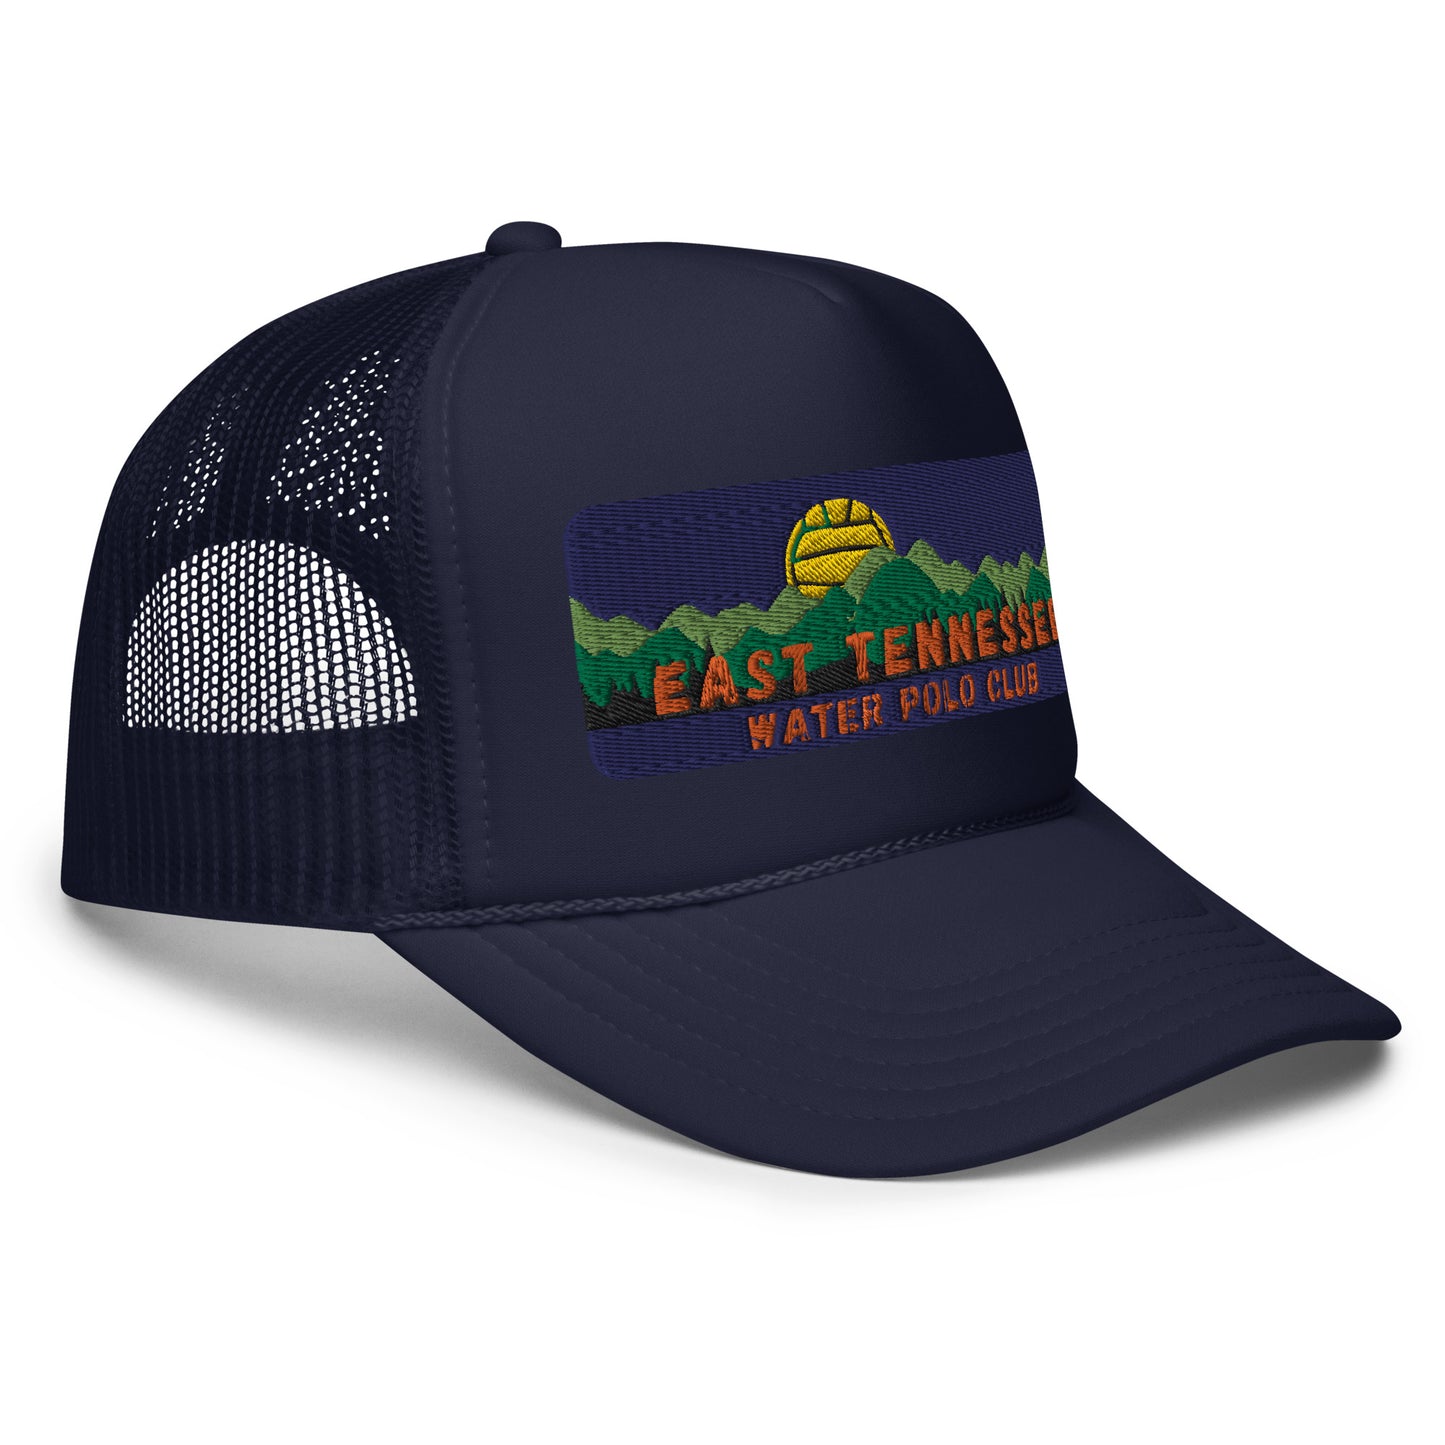 East Tennessee WPC Foam trucker hat